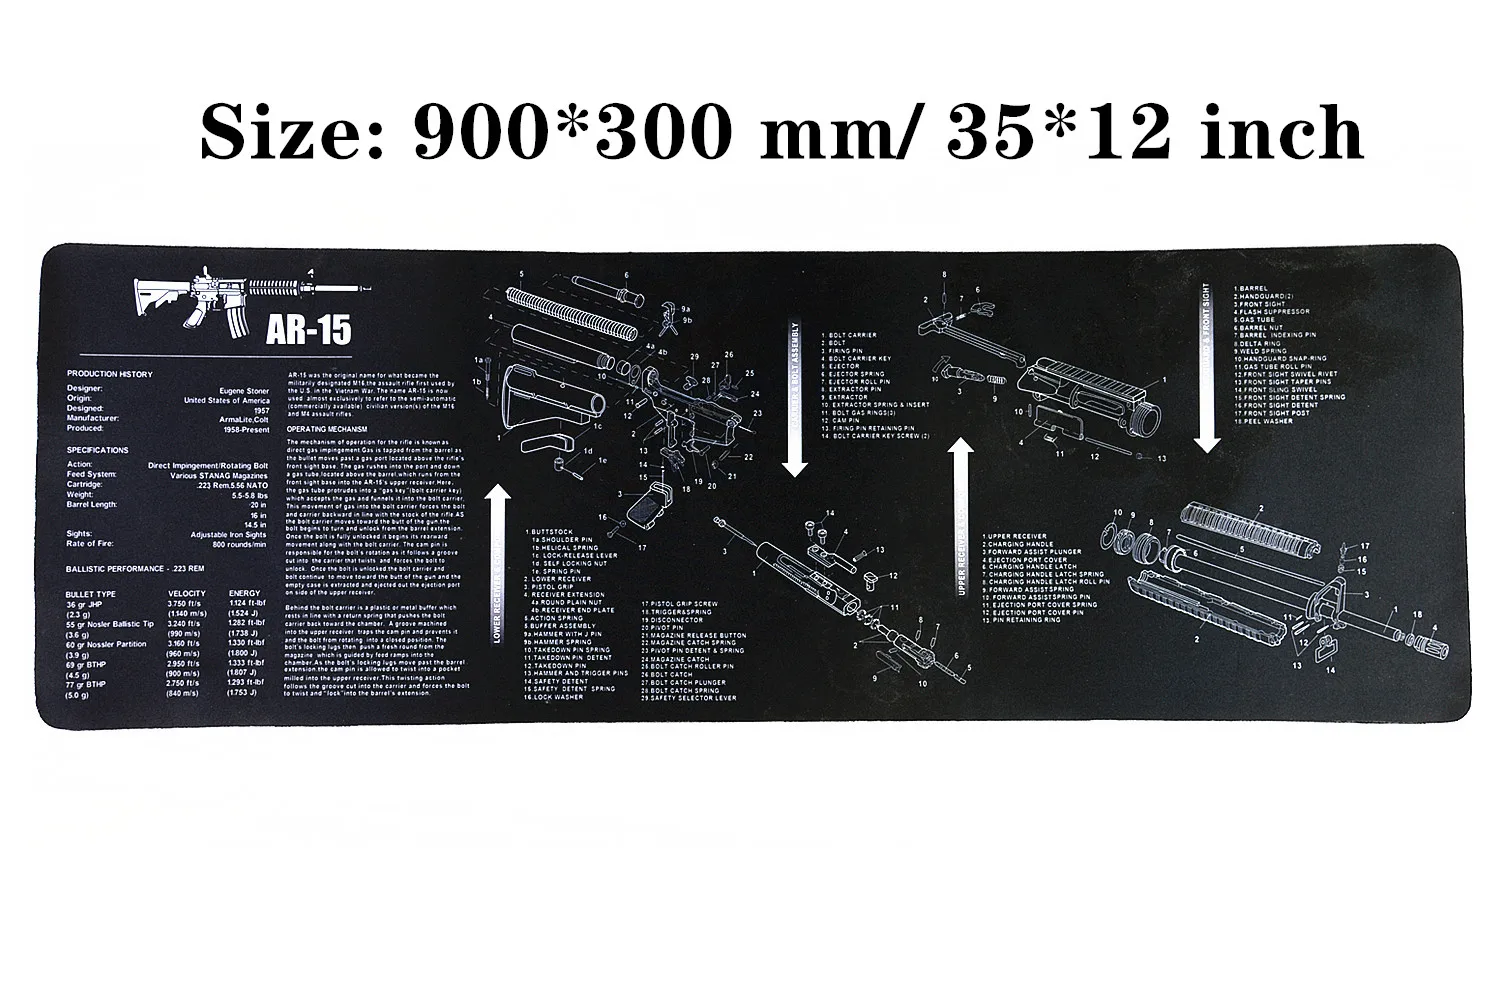 Водостойкий пистолет резиновый коврик для чистки Glock 1911 Beretta HK USP SIG P226 AR15 AK47 Remington с армирующими частями список коврик для верстака - Цвет: AR15